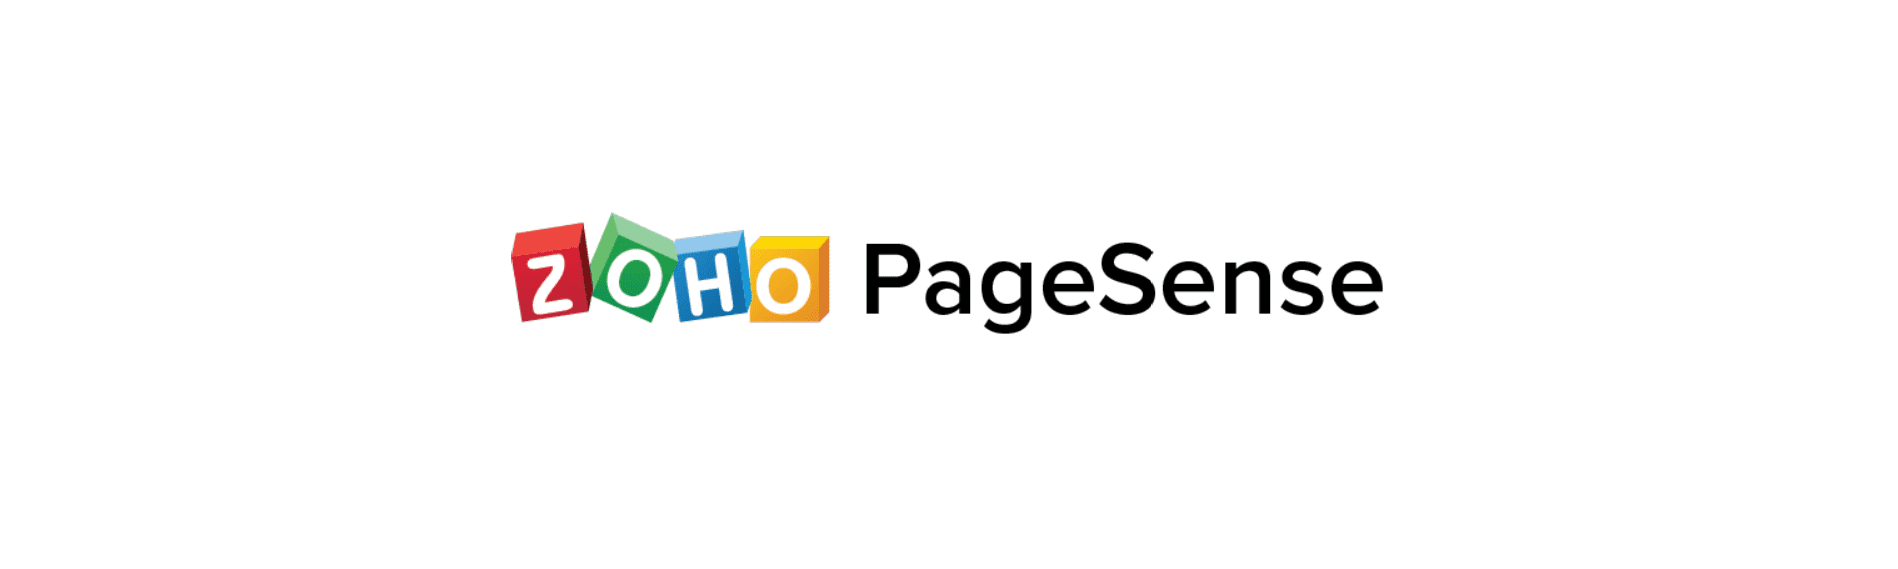 Zoho PageSense Türkiye